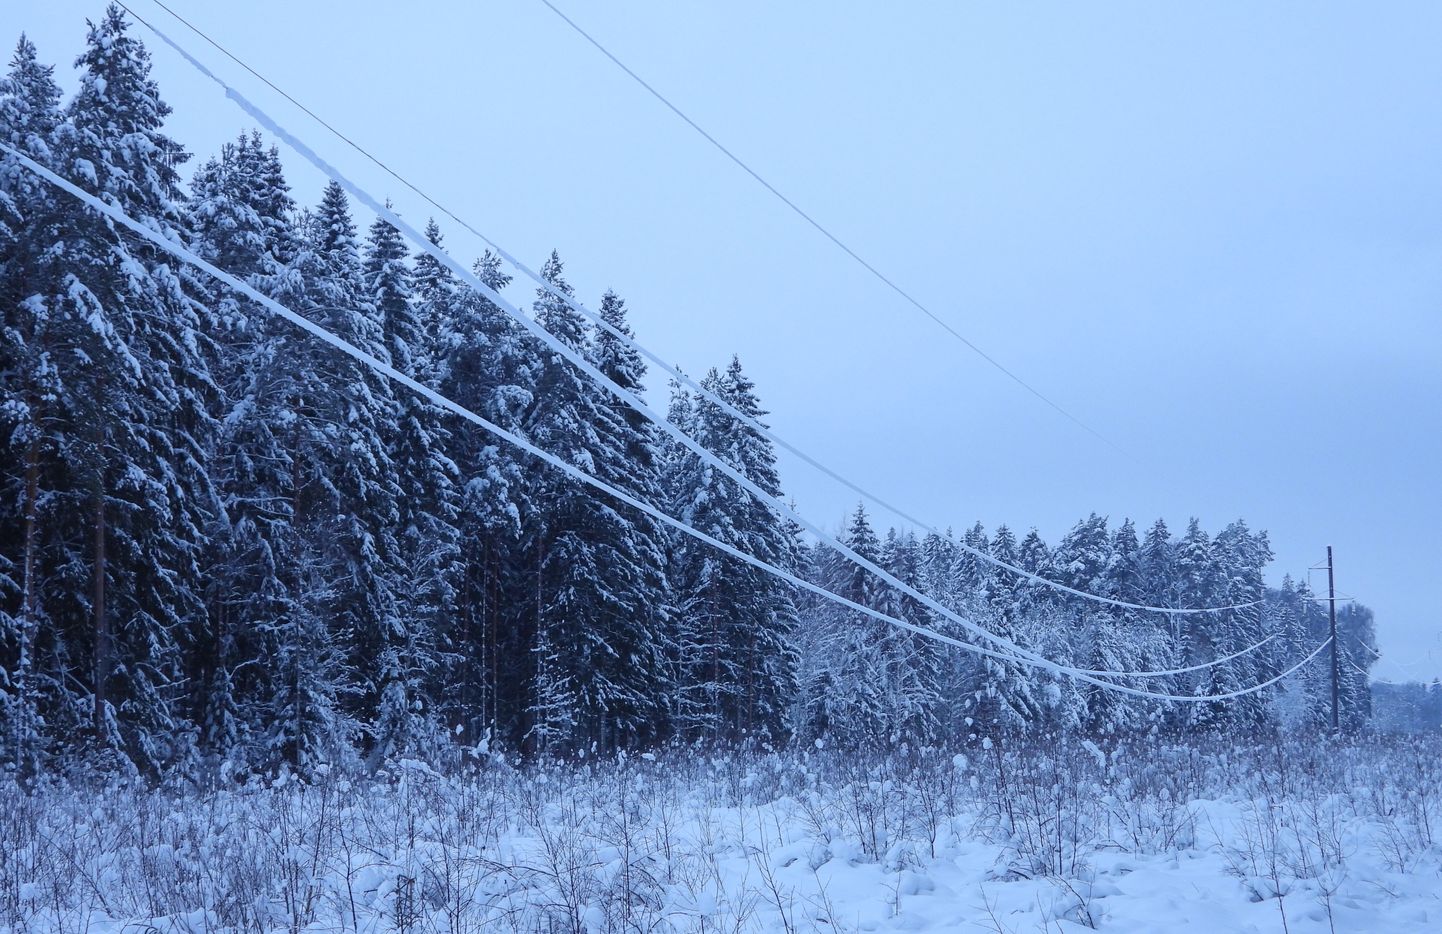 Lume ja jäite raskuse tõttu vajuvad elektriliinid talvel allapoole. See tähendab, et tuleb olla eriti tähelepanelik, sest ohutuskaugus kolm meetrit on omakorda madalamal.